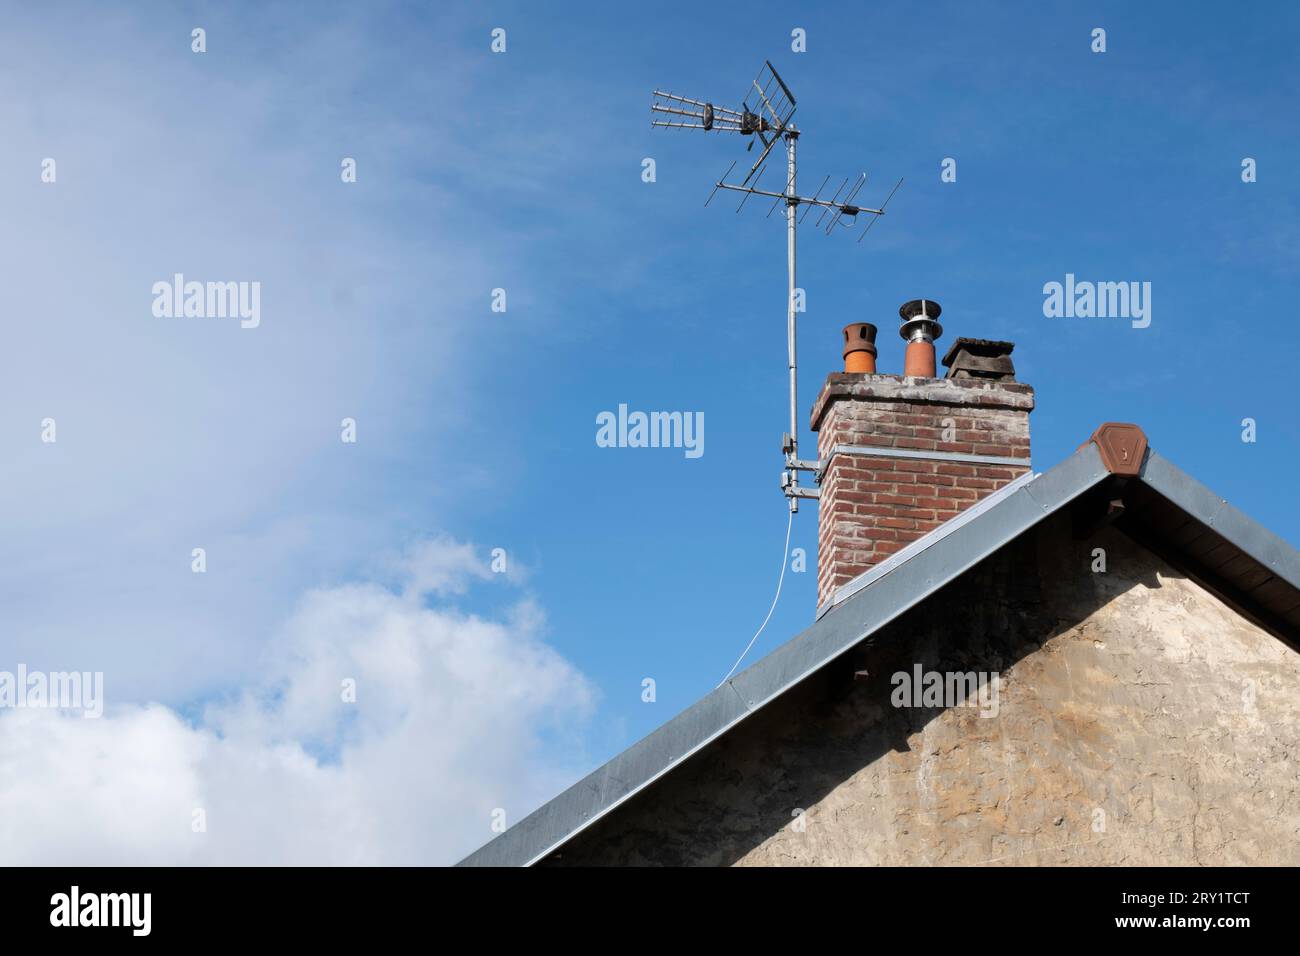 Fernsehantenne am gemauerten Kamin auf einem Hausdach mit Kalksteinwand. Blauer Himmel mit Wolken. Kopierbereich Stockfoto